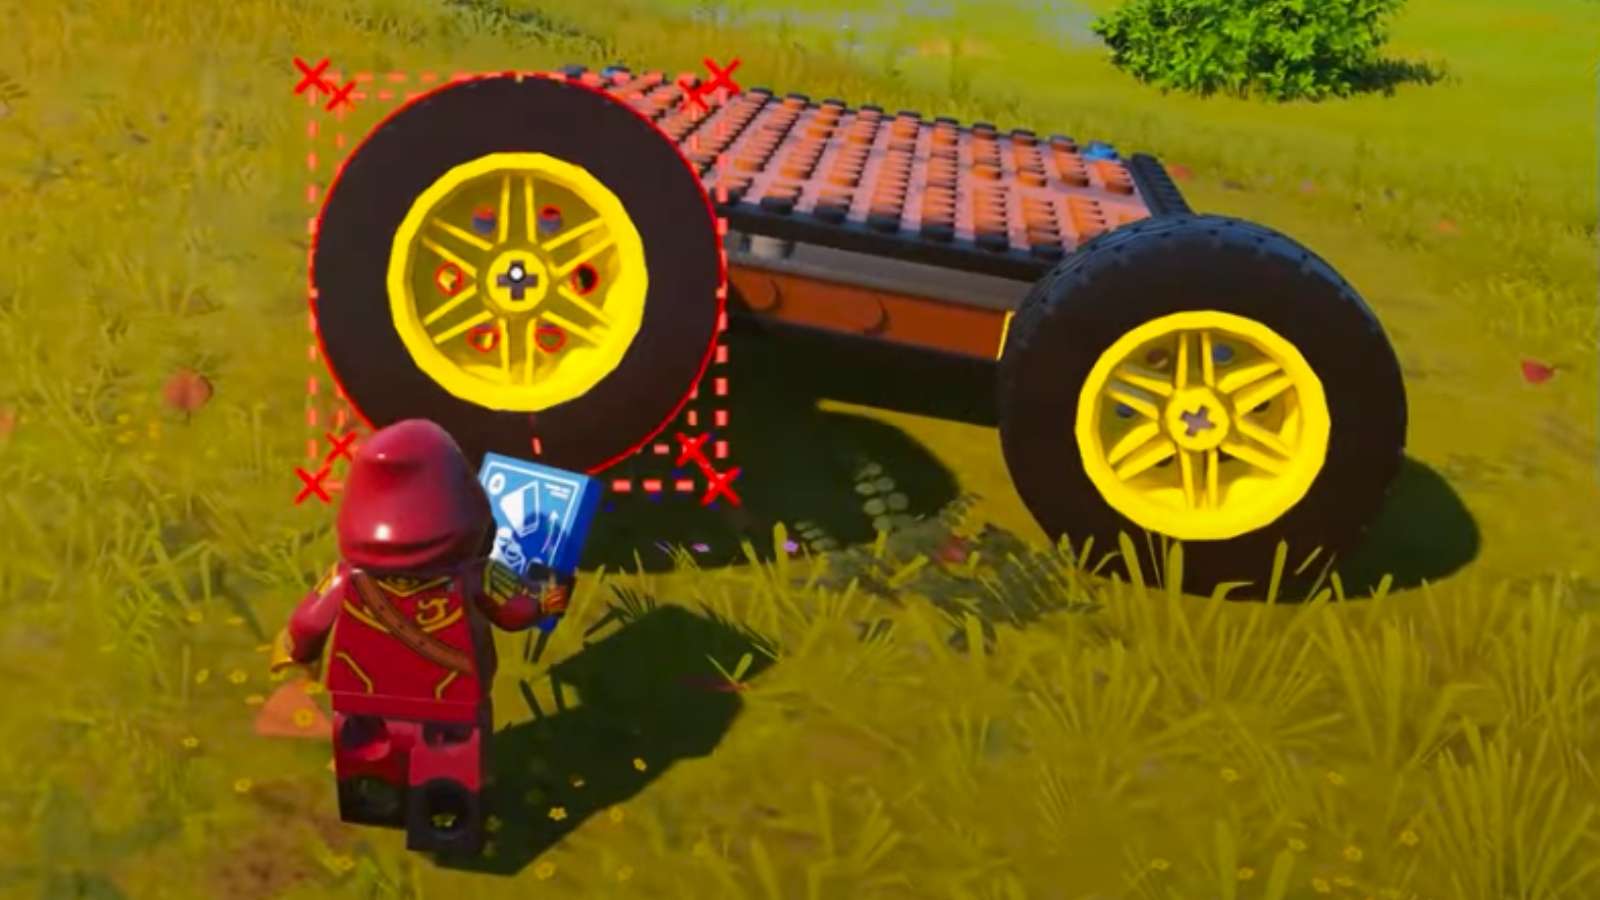 LEGO Fortnite wheels in the game.